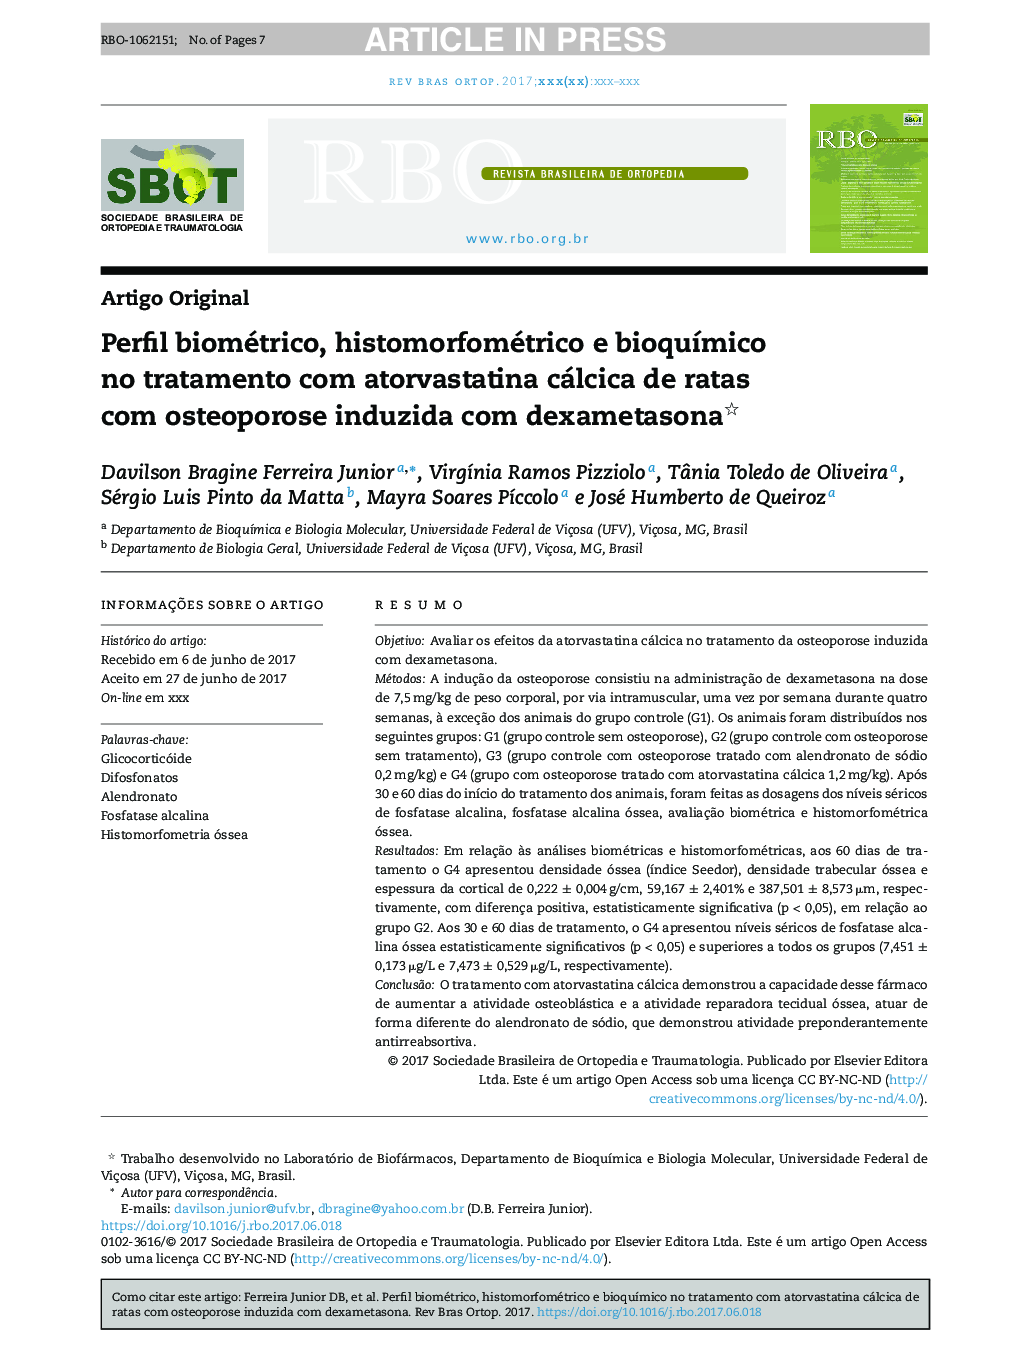 Perfil biométrico, histomorfométrico e bioquÃ­mico no tratamento com atorvastatina cálcica de ratas com osteoporose induzida com dexametasona